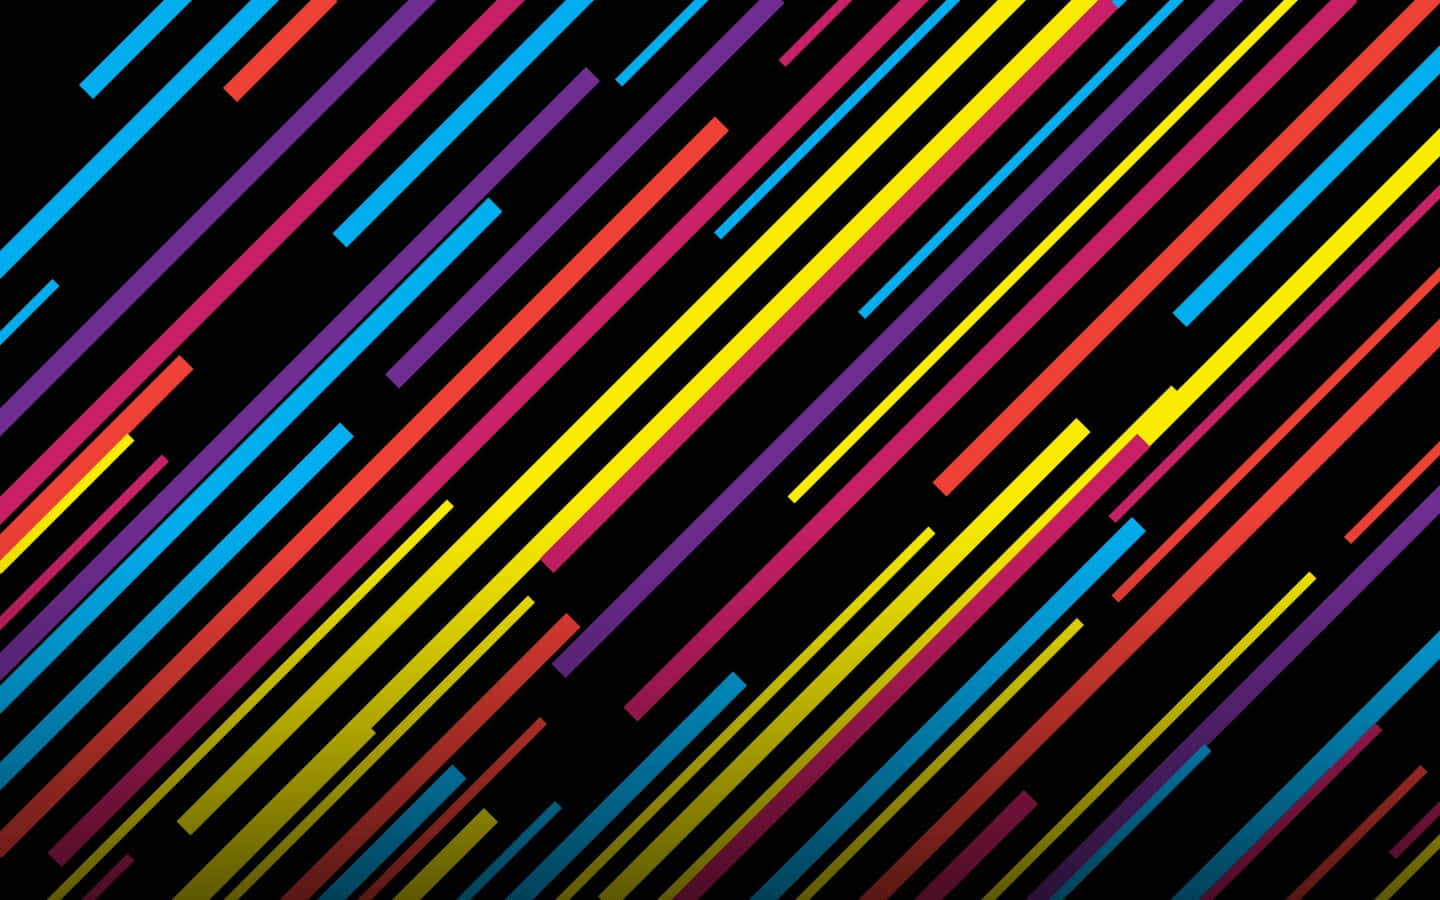 Einbunter Hintergrund Mit Linien In Verschiedenen Farben.